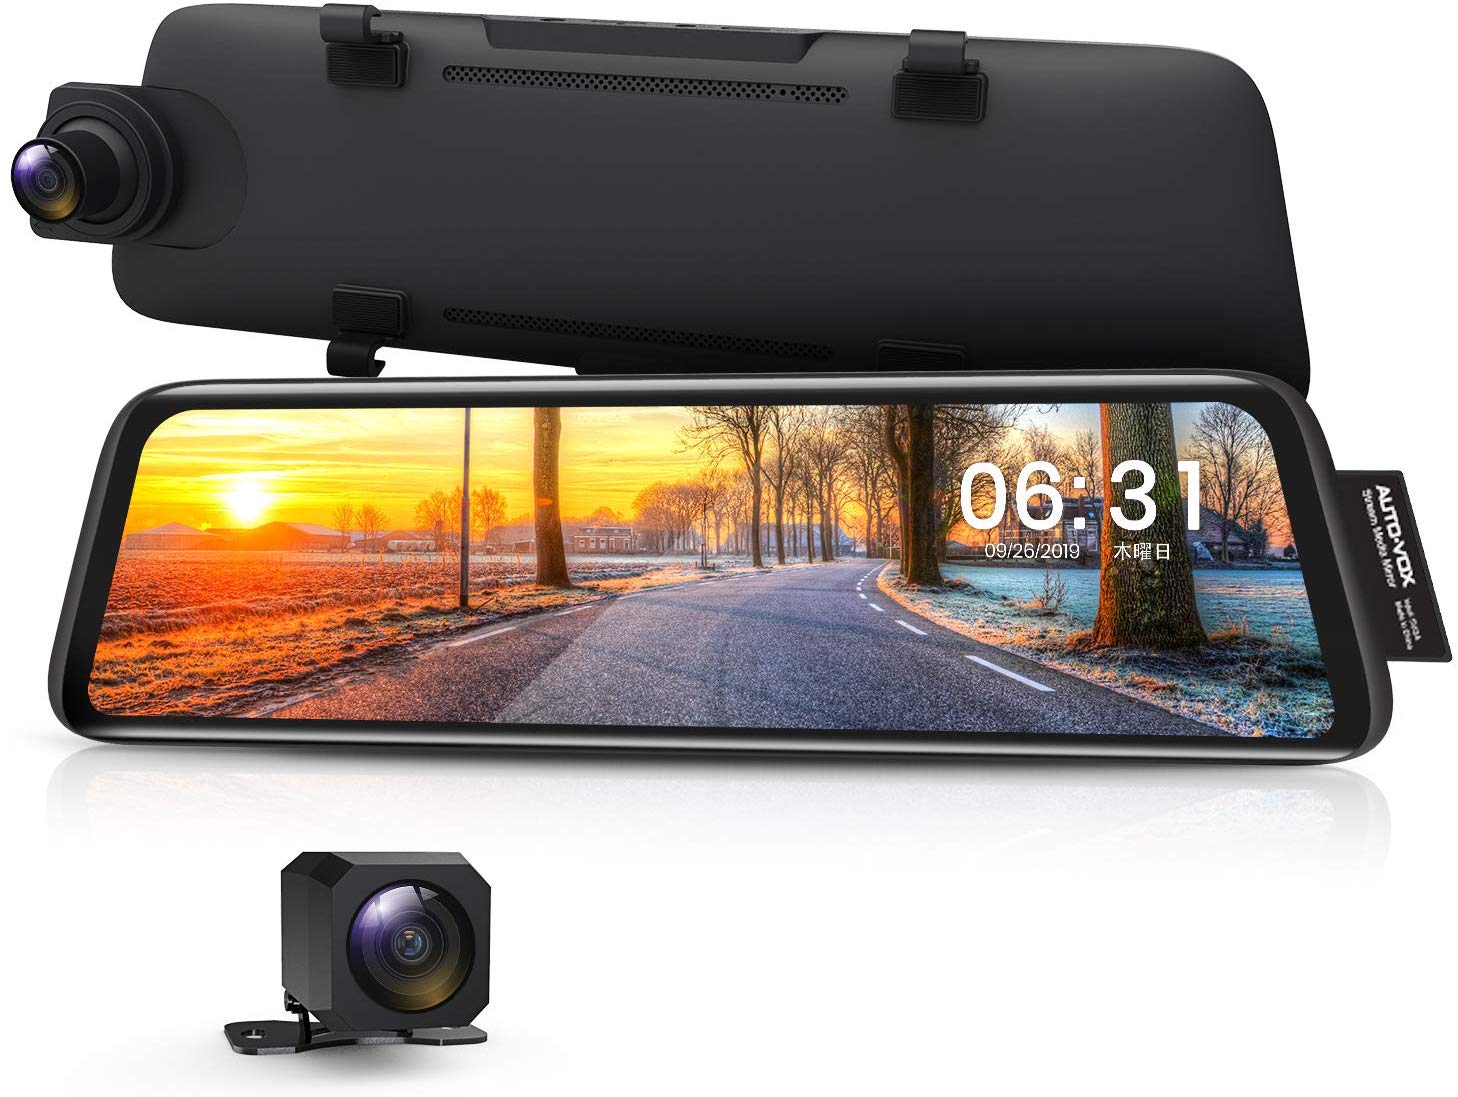 ドライブレコーダー 前後カメラ 前後1080P 右ハンドル仕様 ノイズ対策 デジタルインナーミラー 駐車監視 GPS タッチパネル 2分割画面  2重映像対策 光の反射対策 Sonyセンサー AUTO-VOX V5 | ALinks 楽天市場店